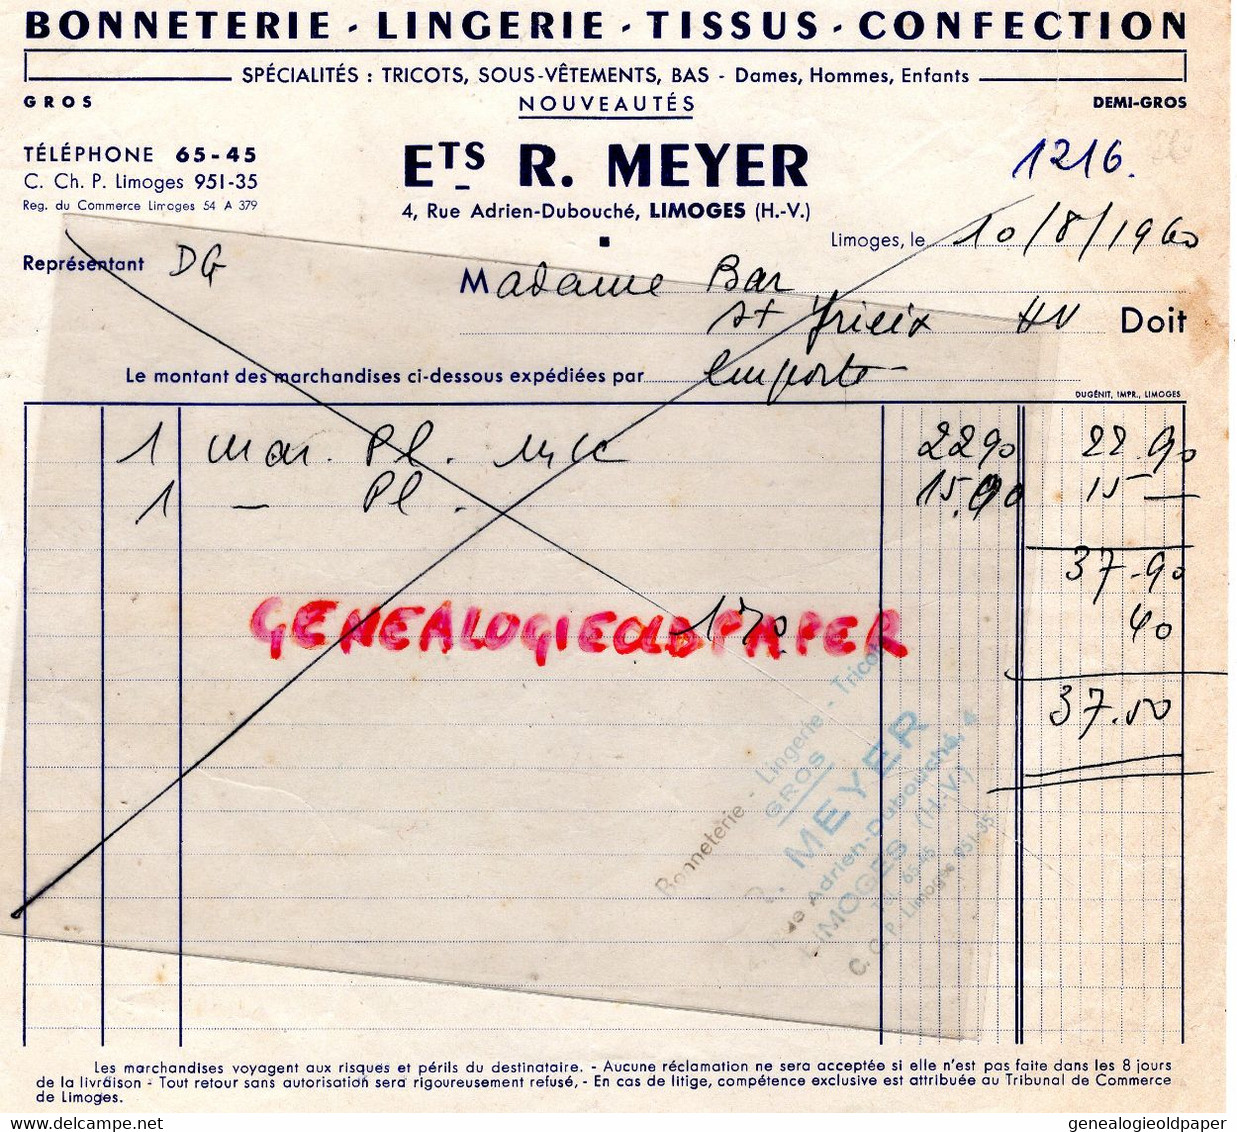 87- LIMOGES- FACTURE BONNETERIE LINGERIE CONFECTION R. MEYER-4 RUE ADRIEN DUBOUCHE-MME BAR ST SAINT YRIEIX- 1960 - Textile & Clothing